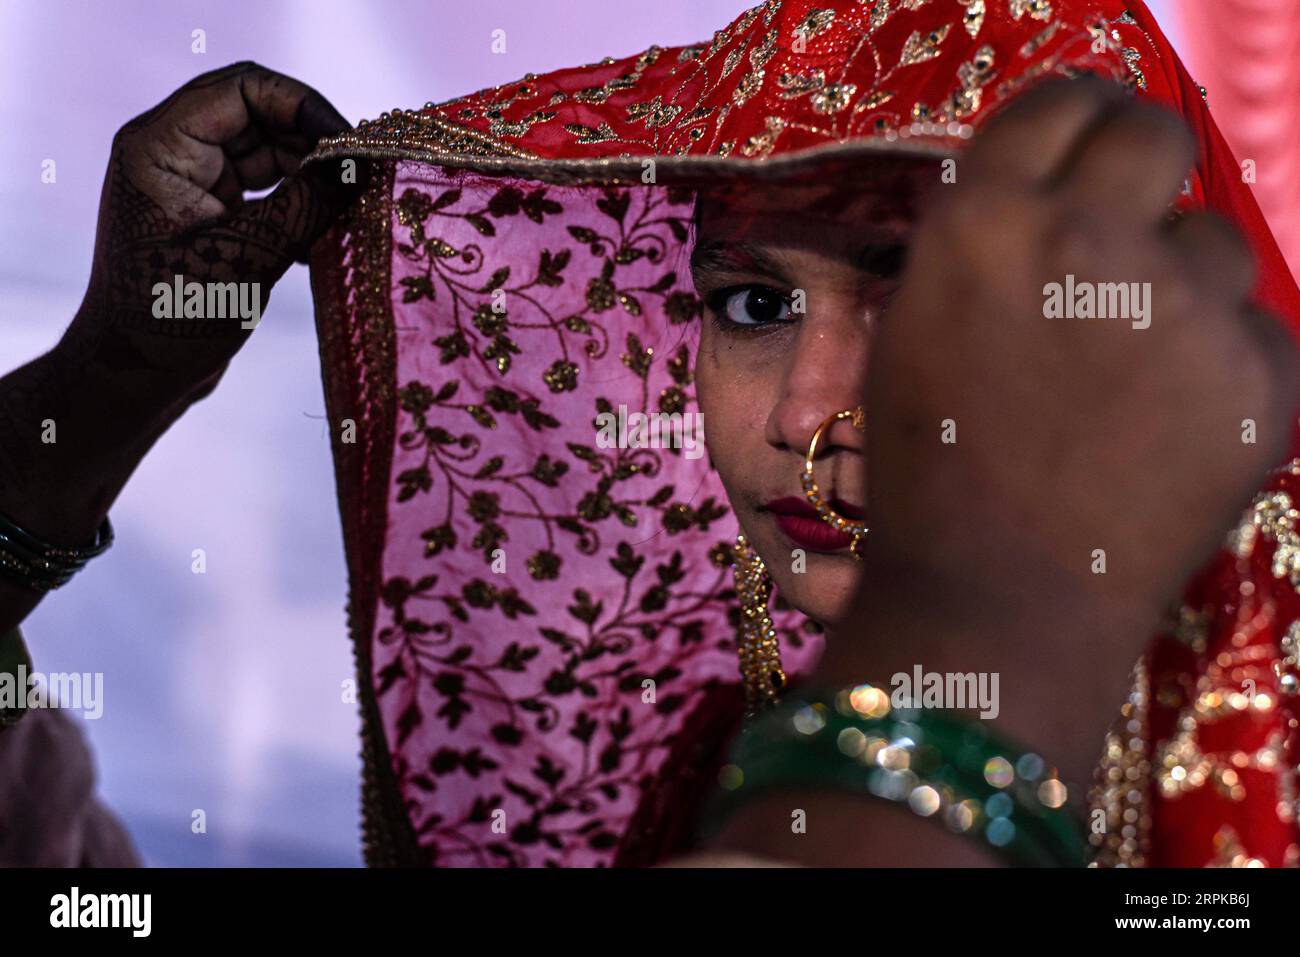 200106 -- MUMBAI, 6. Januar 2020 Xinhua -- eine indische Braut in traditioneller Hochzeitskleidung nimmt an der 14. Jährlichen Massenheirat-Zeremonie in Mumbai, Indien, am 5. Januar 2020 Teil. Rund 53 Paare heirateten während der Zeremonie. Massenhochzeiten in Indien werden von sozialen Organisationen in erster Linie organisiert, um den wirtschaftlich zurückgebliebenen Familien zu helfen, die sich die hohen Zeremoniekosten sowie die übliche Mitgift und teure Geschenke, die in vielen Gemeinden immer noch verbreitet sind, nicht leisten können. Foto von Fariha Farooqui/Xinhua INDIA-MUMBAI-MASS WEDDING PUBLICATIONxNOTxINxCHN Stockfoto